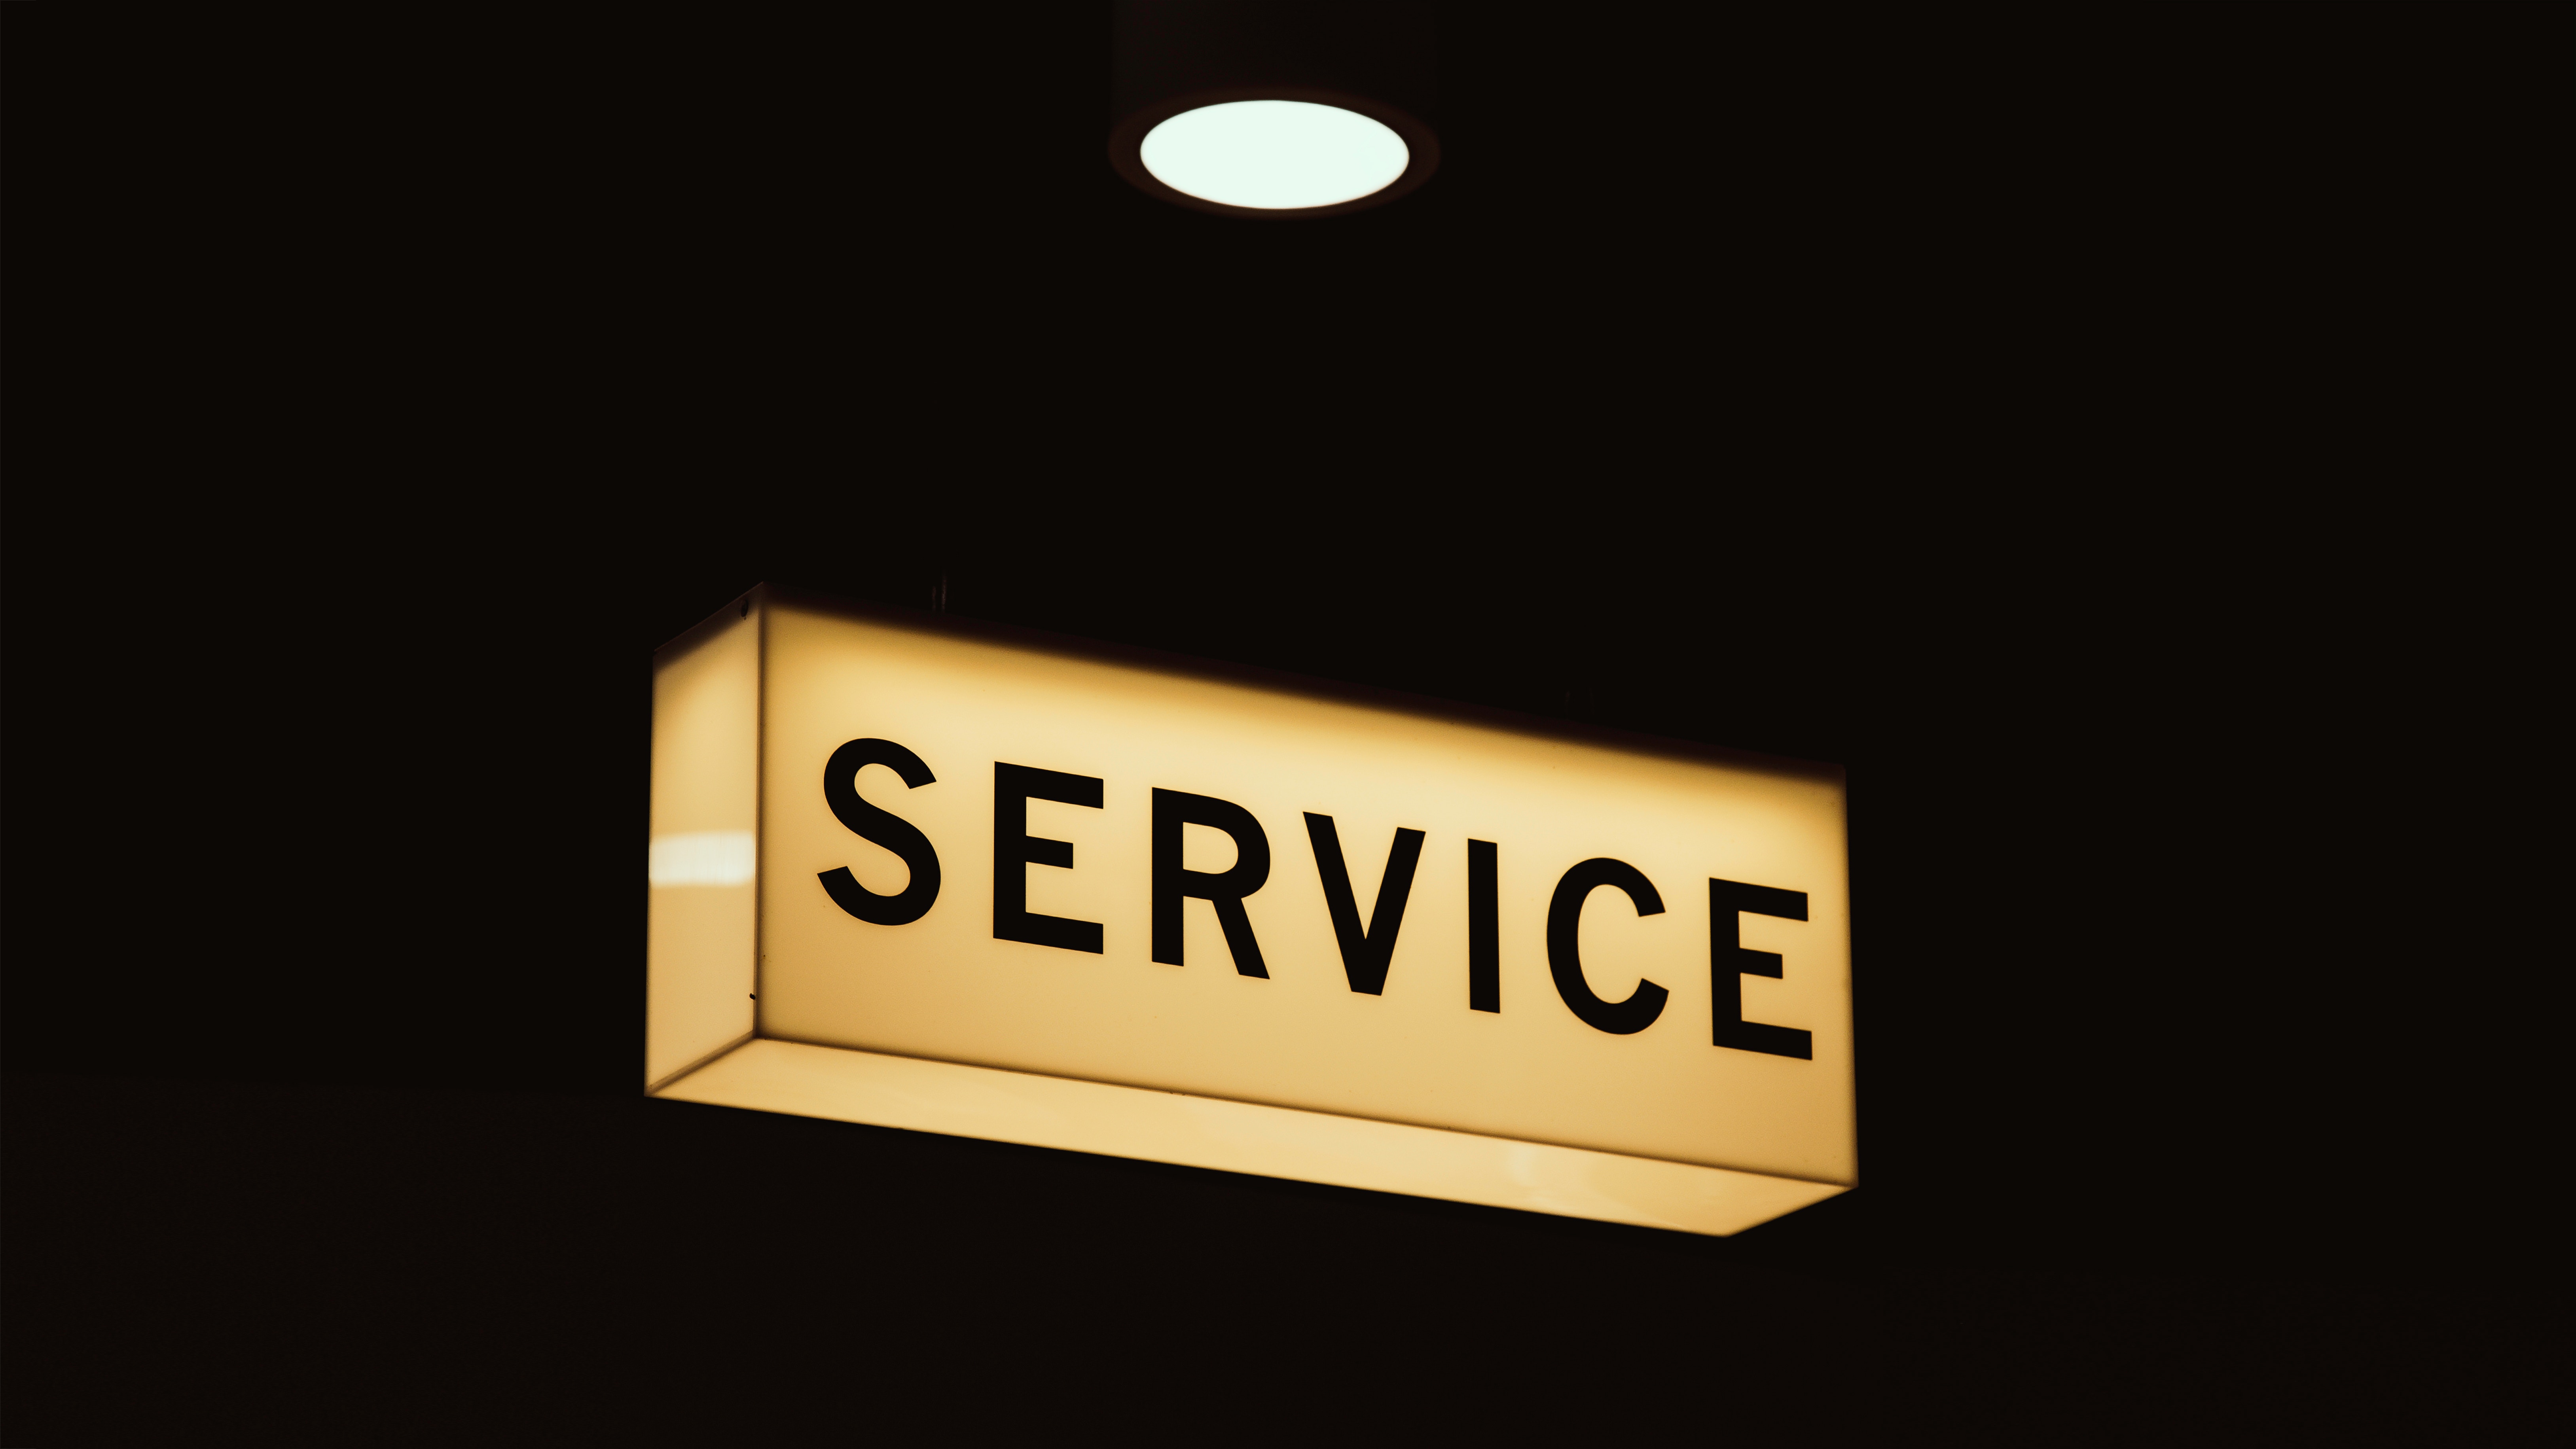 Service illuminated sign